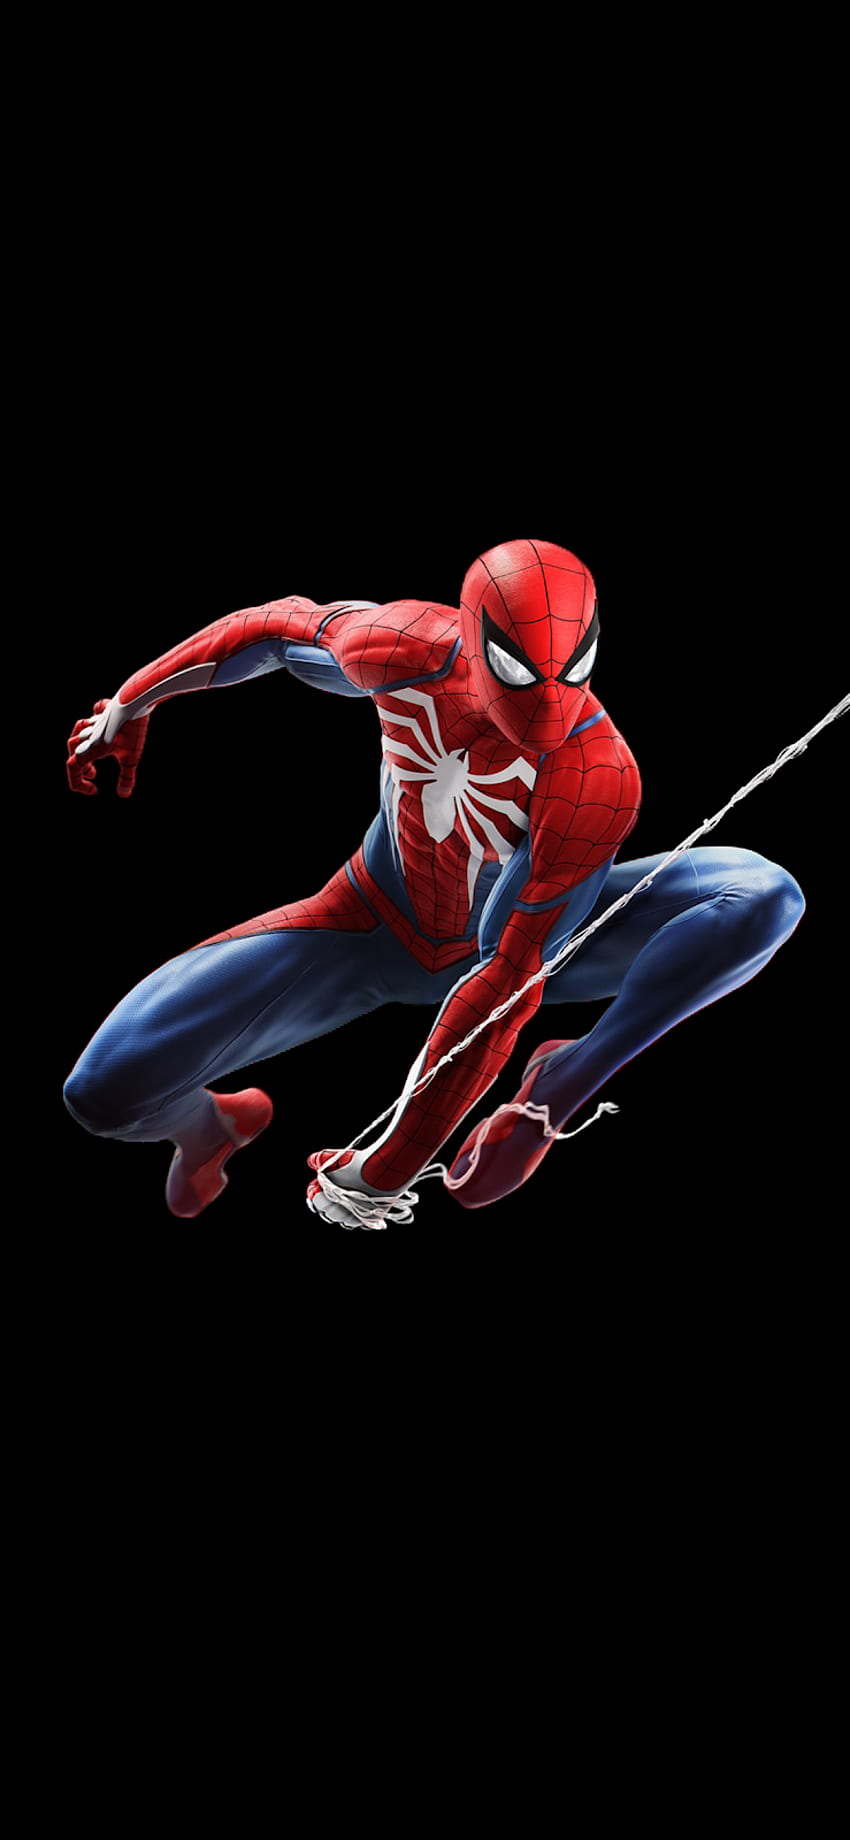 Spider-Man V2 [iPhone X] Oszczędzanie baterii do wyświetlacza Amoled, komórka Spider-Mana Tapeta na telefon HD